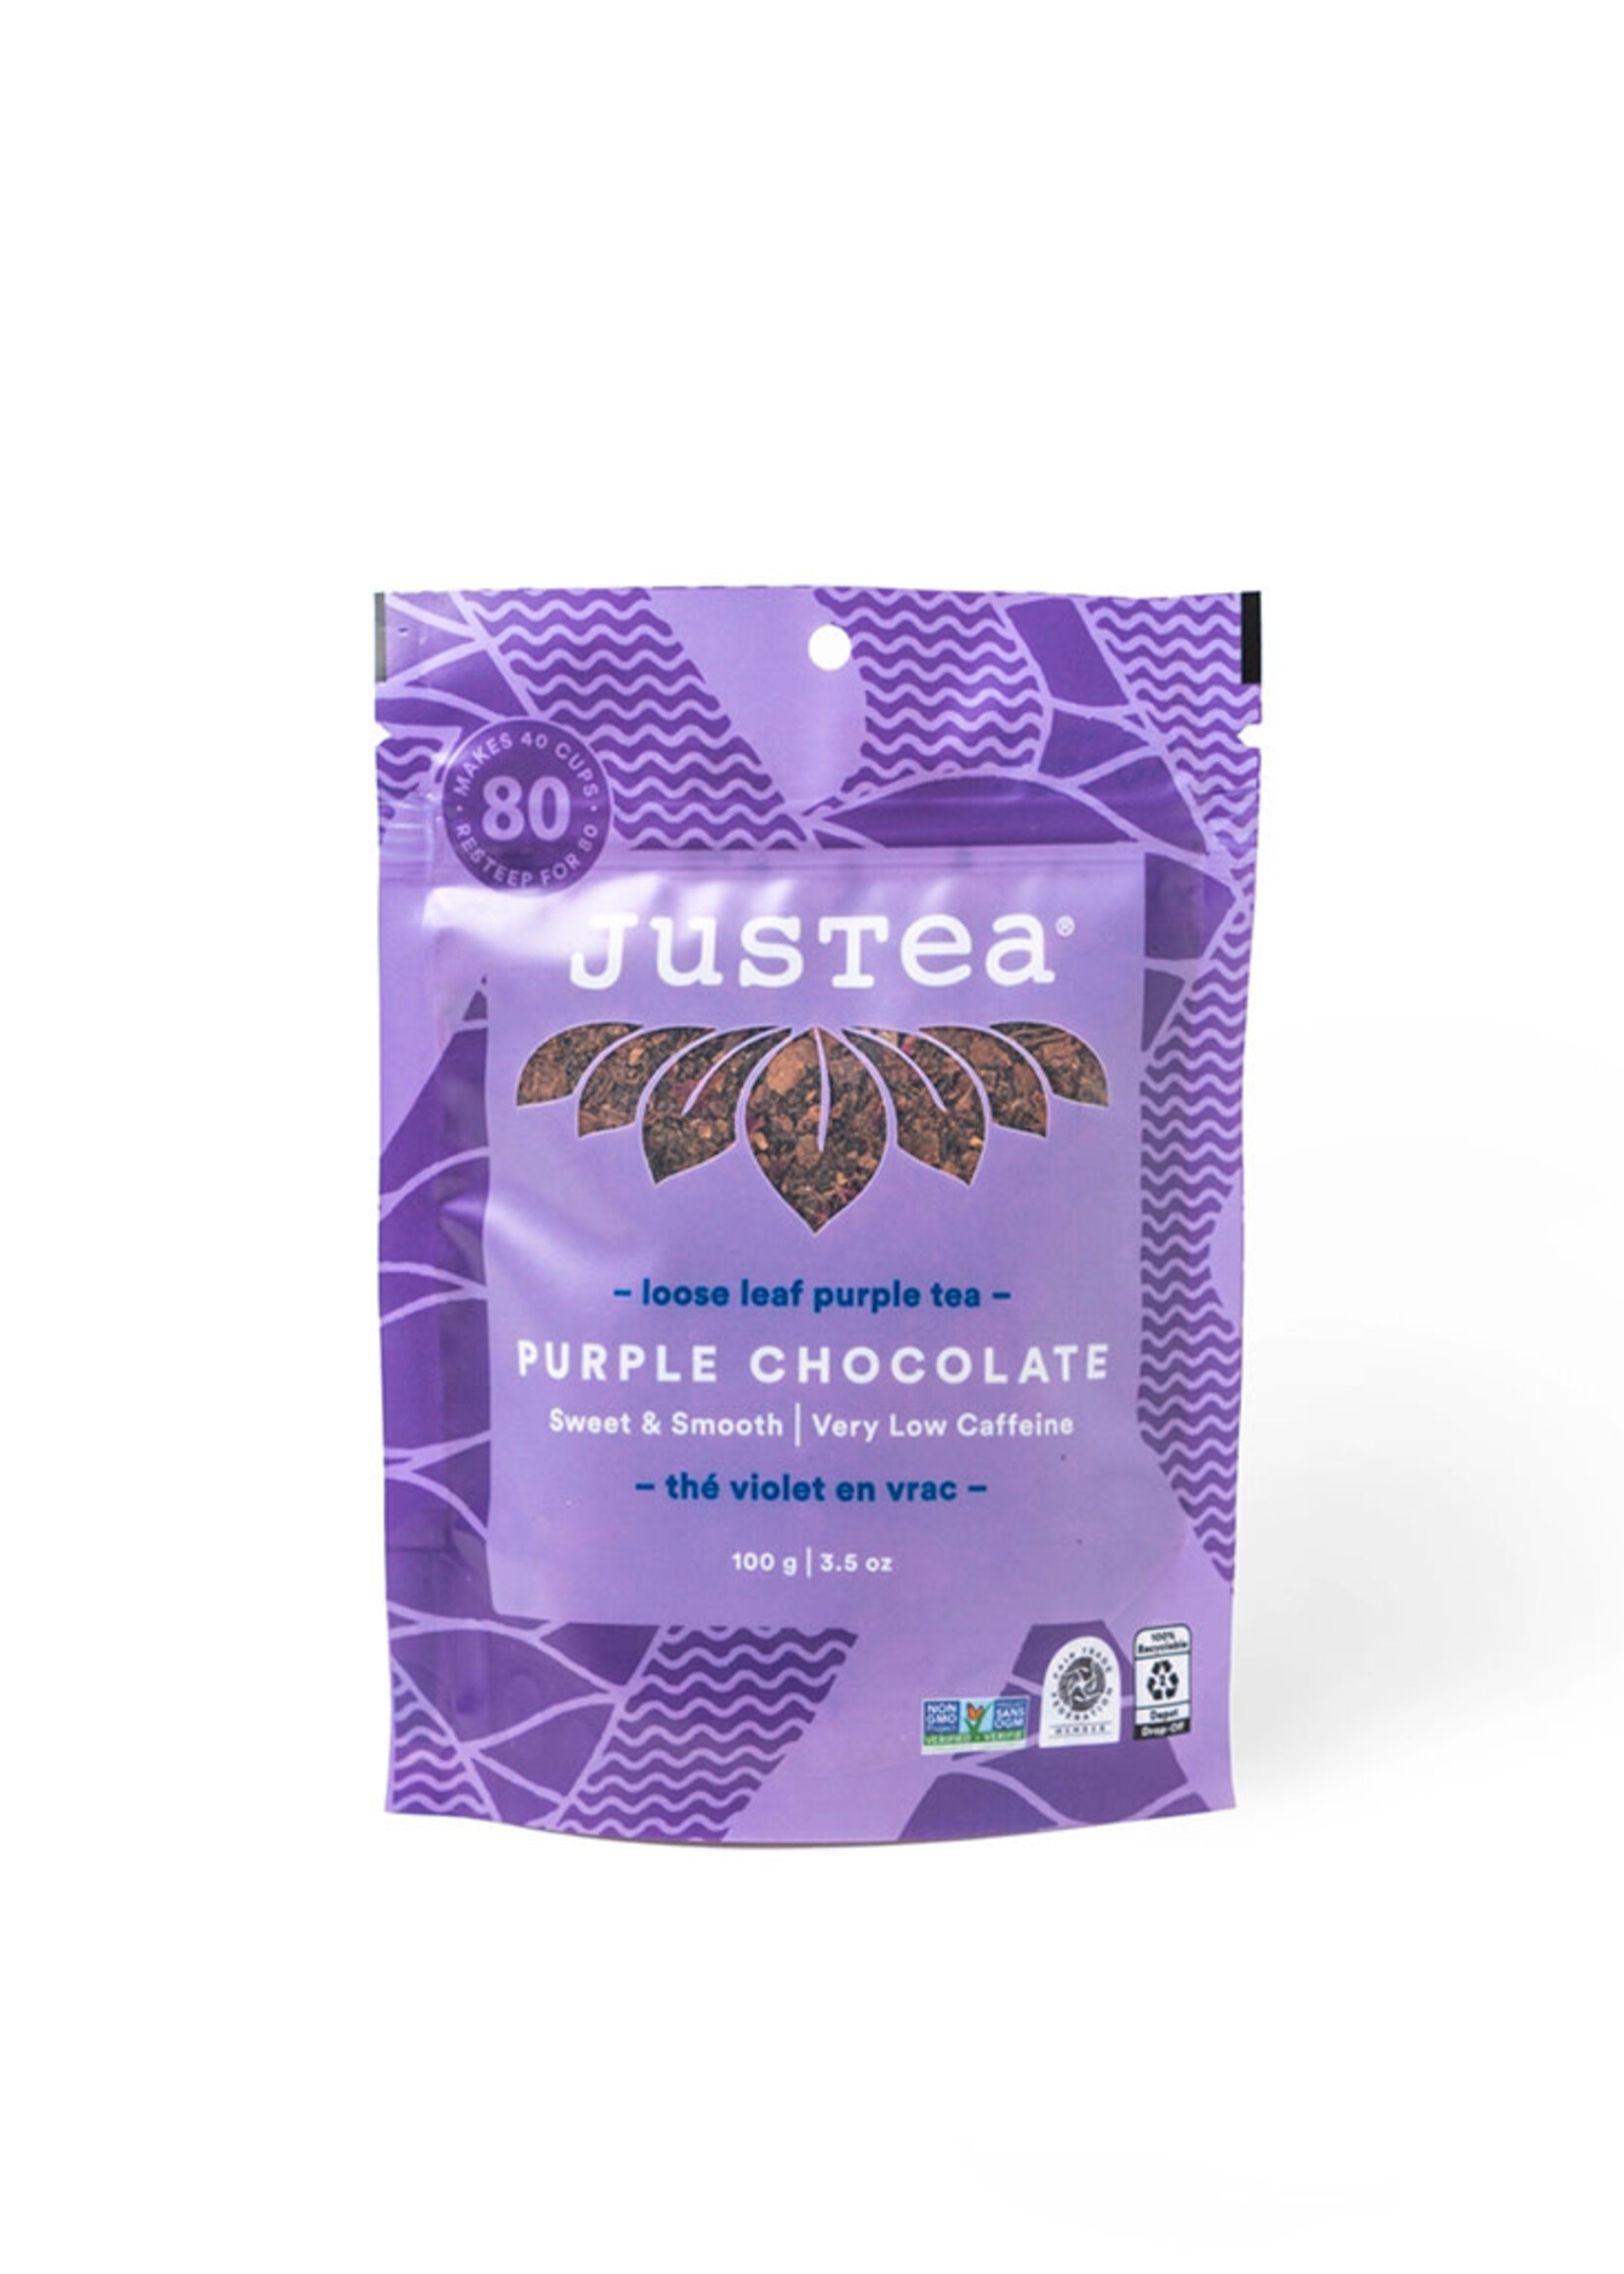 JusTea Purple Chocolate Loose Leaf Tea - Pouch